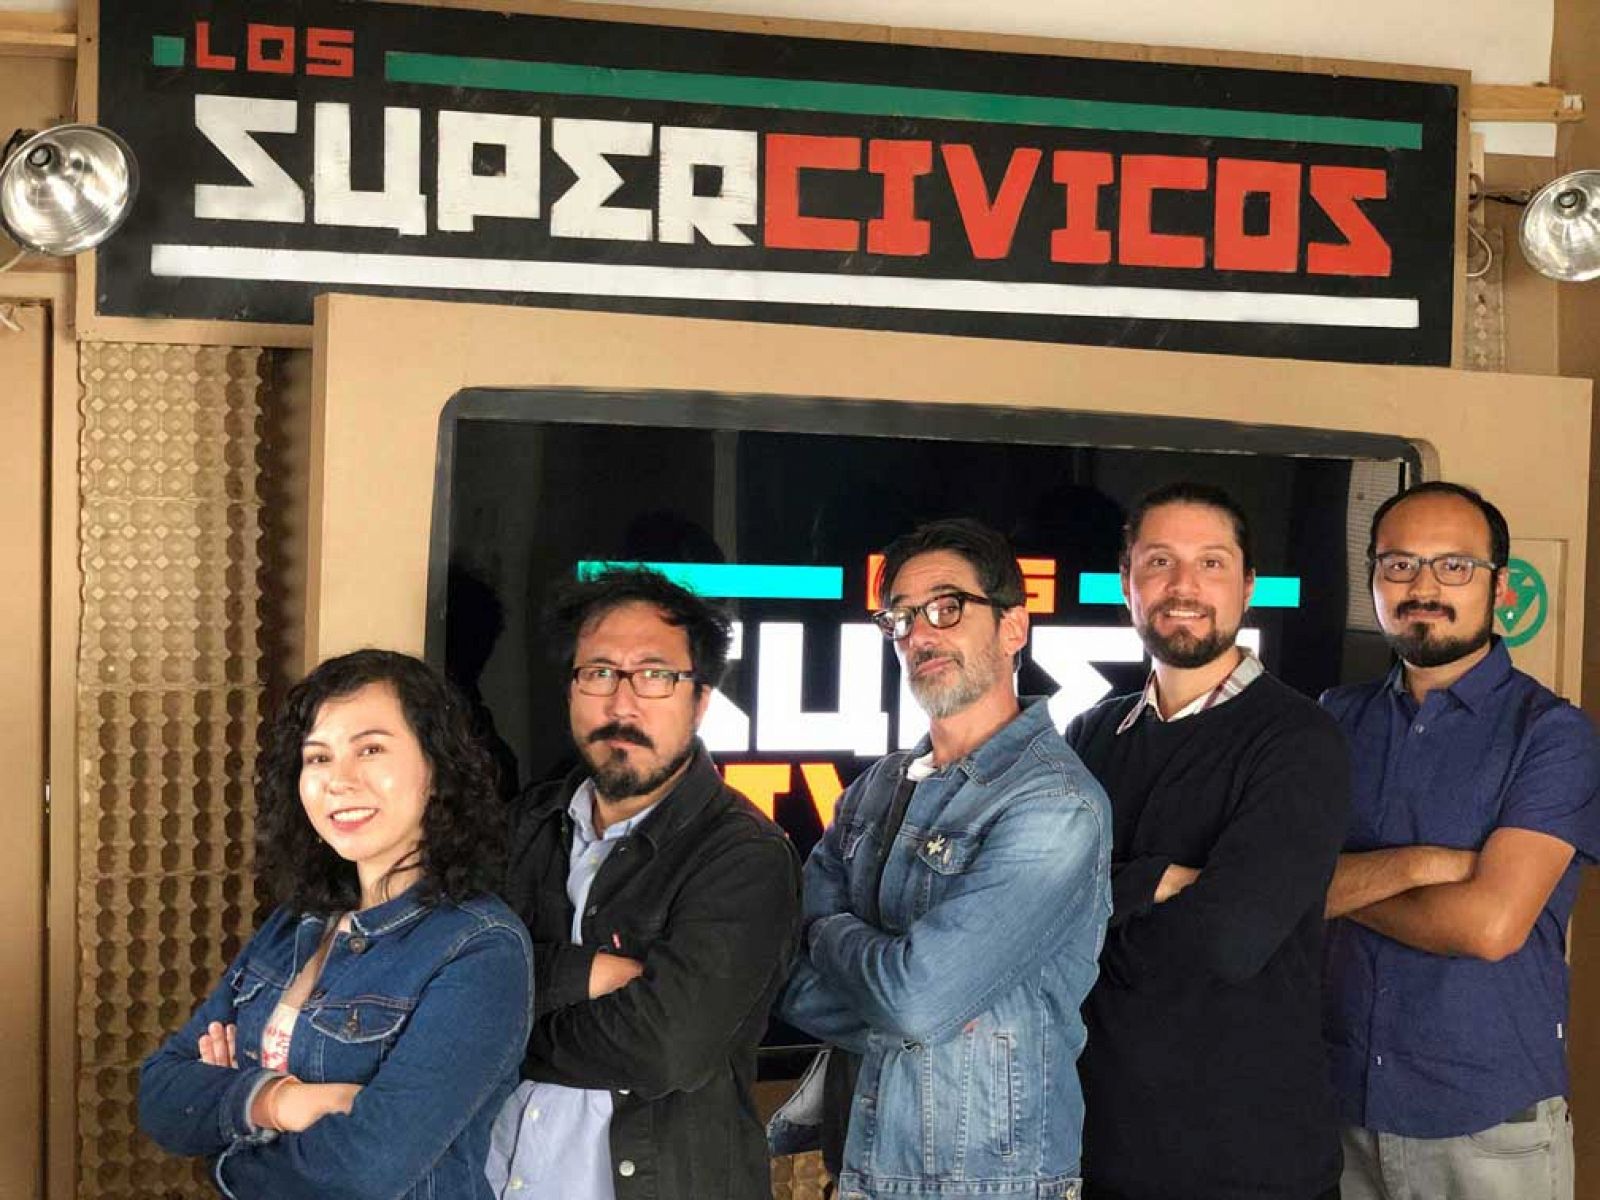 Los Supercívicos mexicanos. Emprendedores sociales